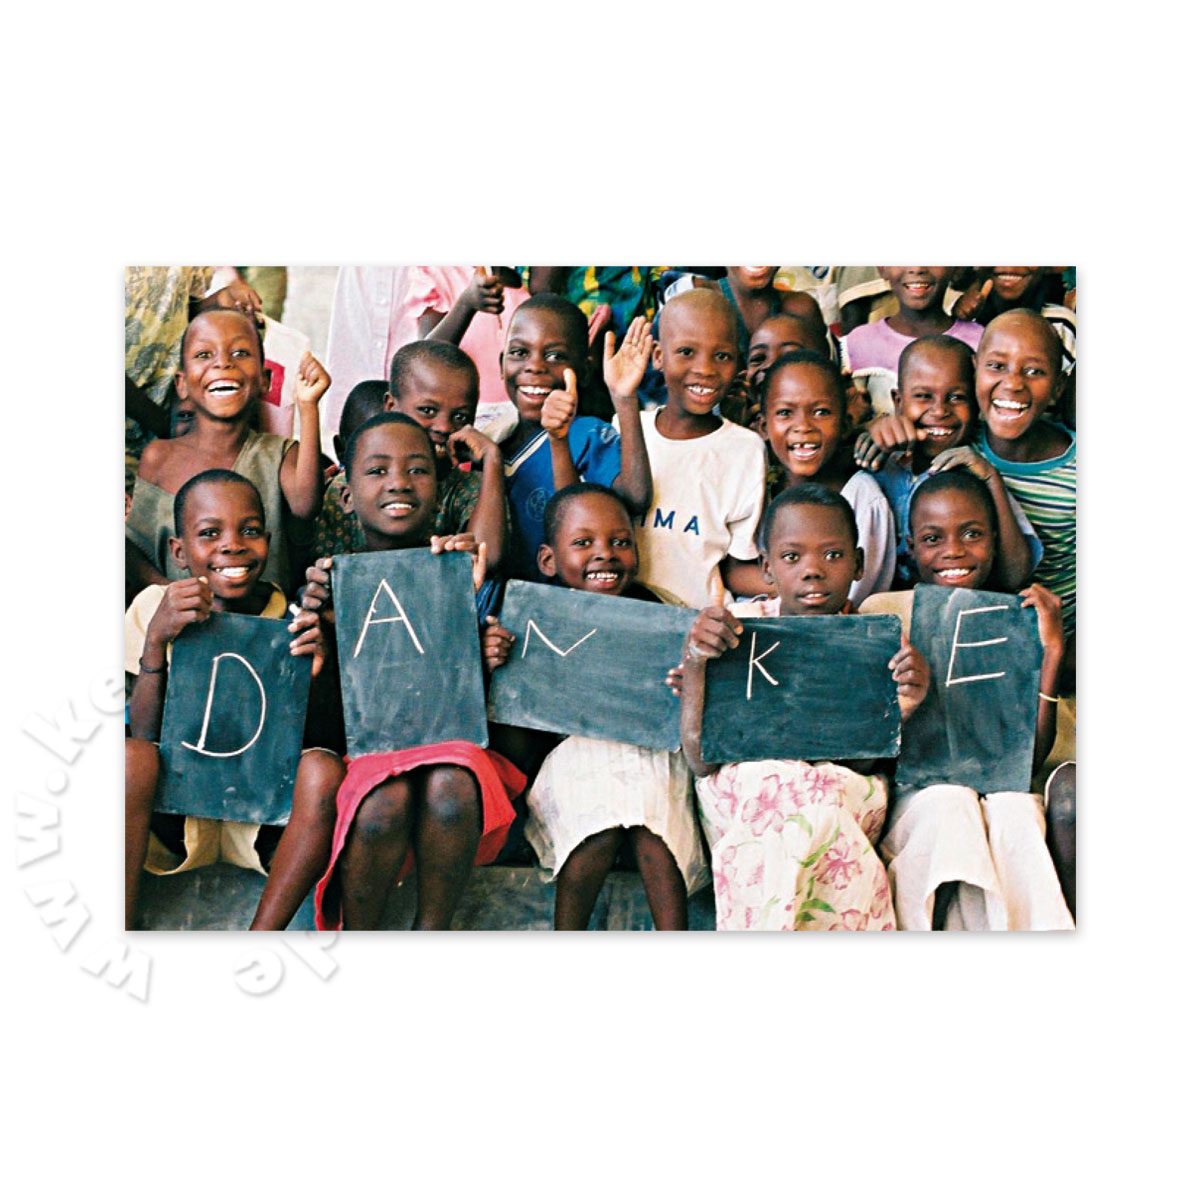 DANKE. Foto-Postkarten mit Spende für die Kinderhilfsorganisation burundikids.